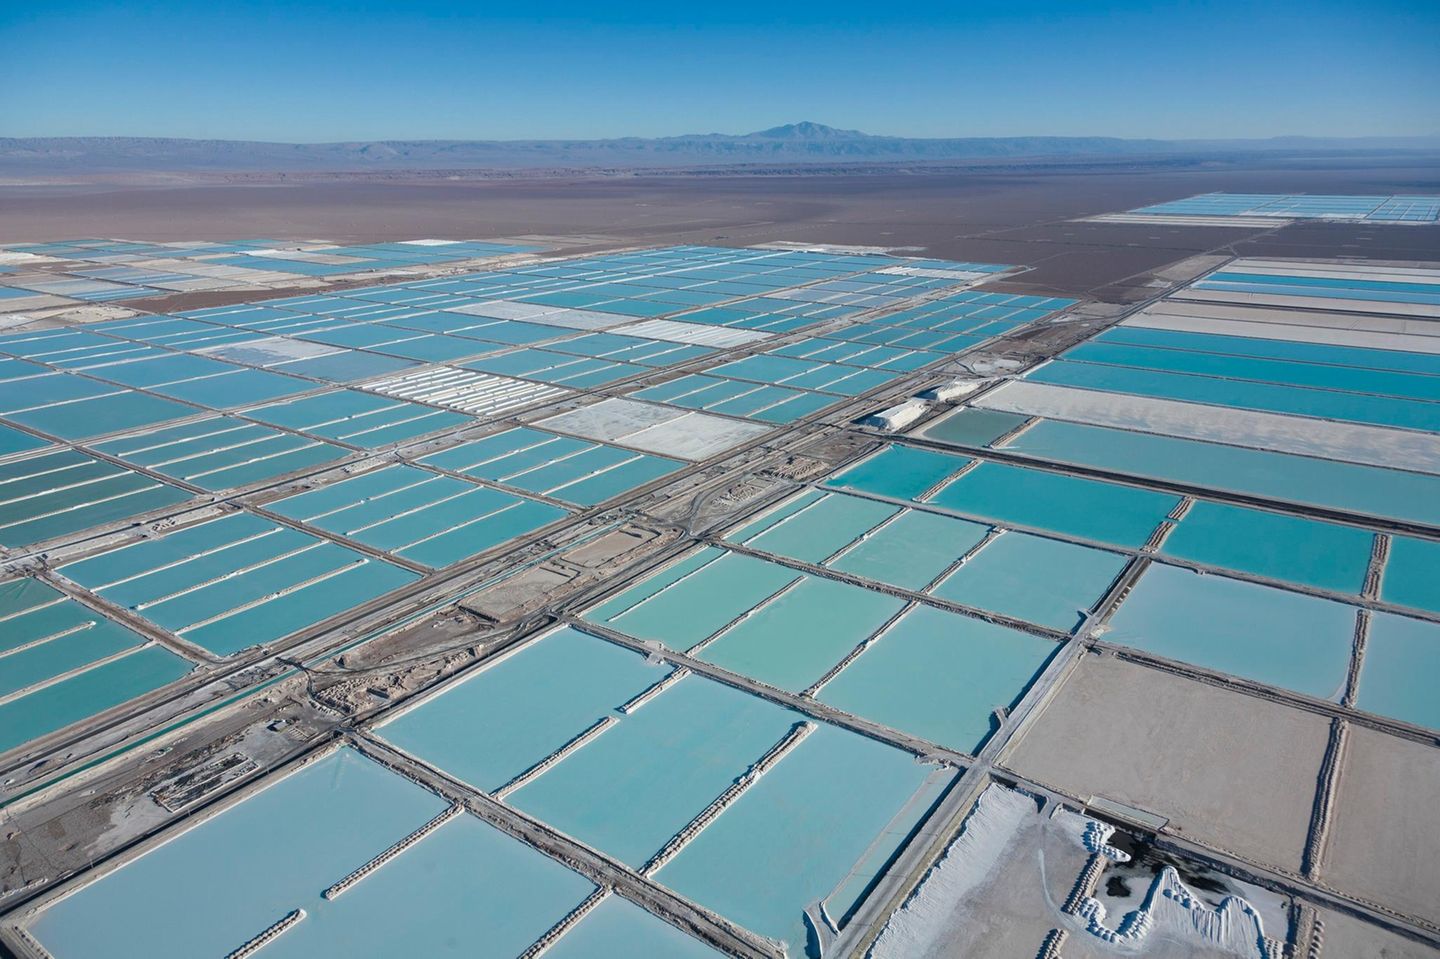 Im Salar de Atacama, der über 3000 Quadratkilometer großen Salzwüste im Osten Chiles, wird ein Rohstoff gewonnen, den die Welt braucht: für Smartphones und Laptops, E-Autos und Stromspeicher. Bergbauunternehmen pumpen lithiumchloridhaltige Sole aus unterirdischen Reservoirs an die Erdoberfläche, leiten sie in fußballfeldgroße Becken und setzen sie dort der Sonne aus. Das Wasser verdunstet und nach mehreren Monaten enthält die Sole etwa sechs Prozent Lithium. Mit einer chemischen Anlage gewinnen Arbeiter Lithiumcarbonat aus dem Gemisch: ein weißes Pulver, das zu Lithiumhydroxid weiterverarbeitet und für die Herstellung von Lithium-Ionen-Akkus exportiert wird.